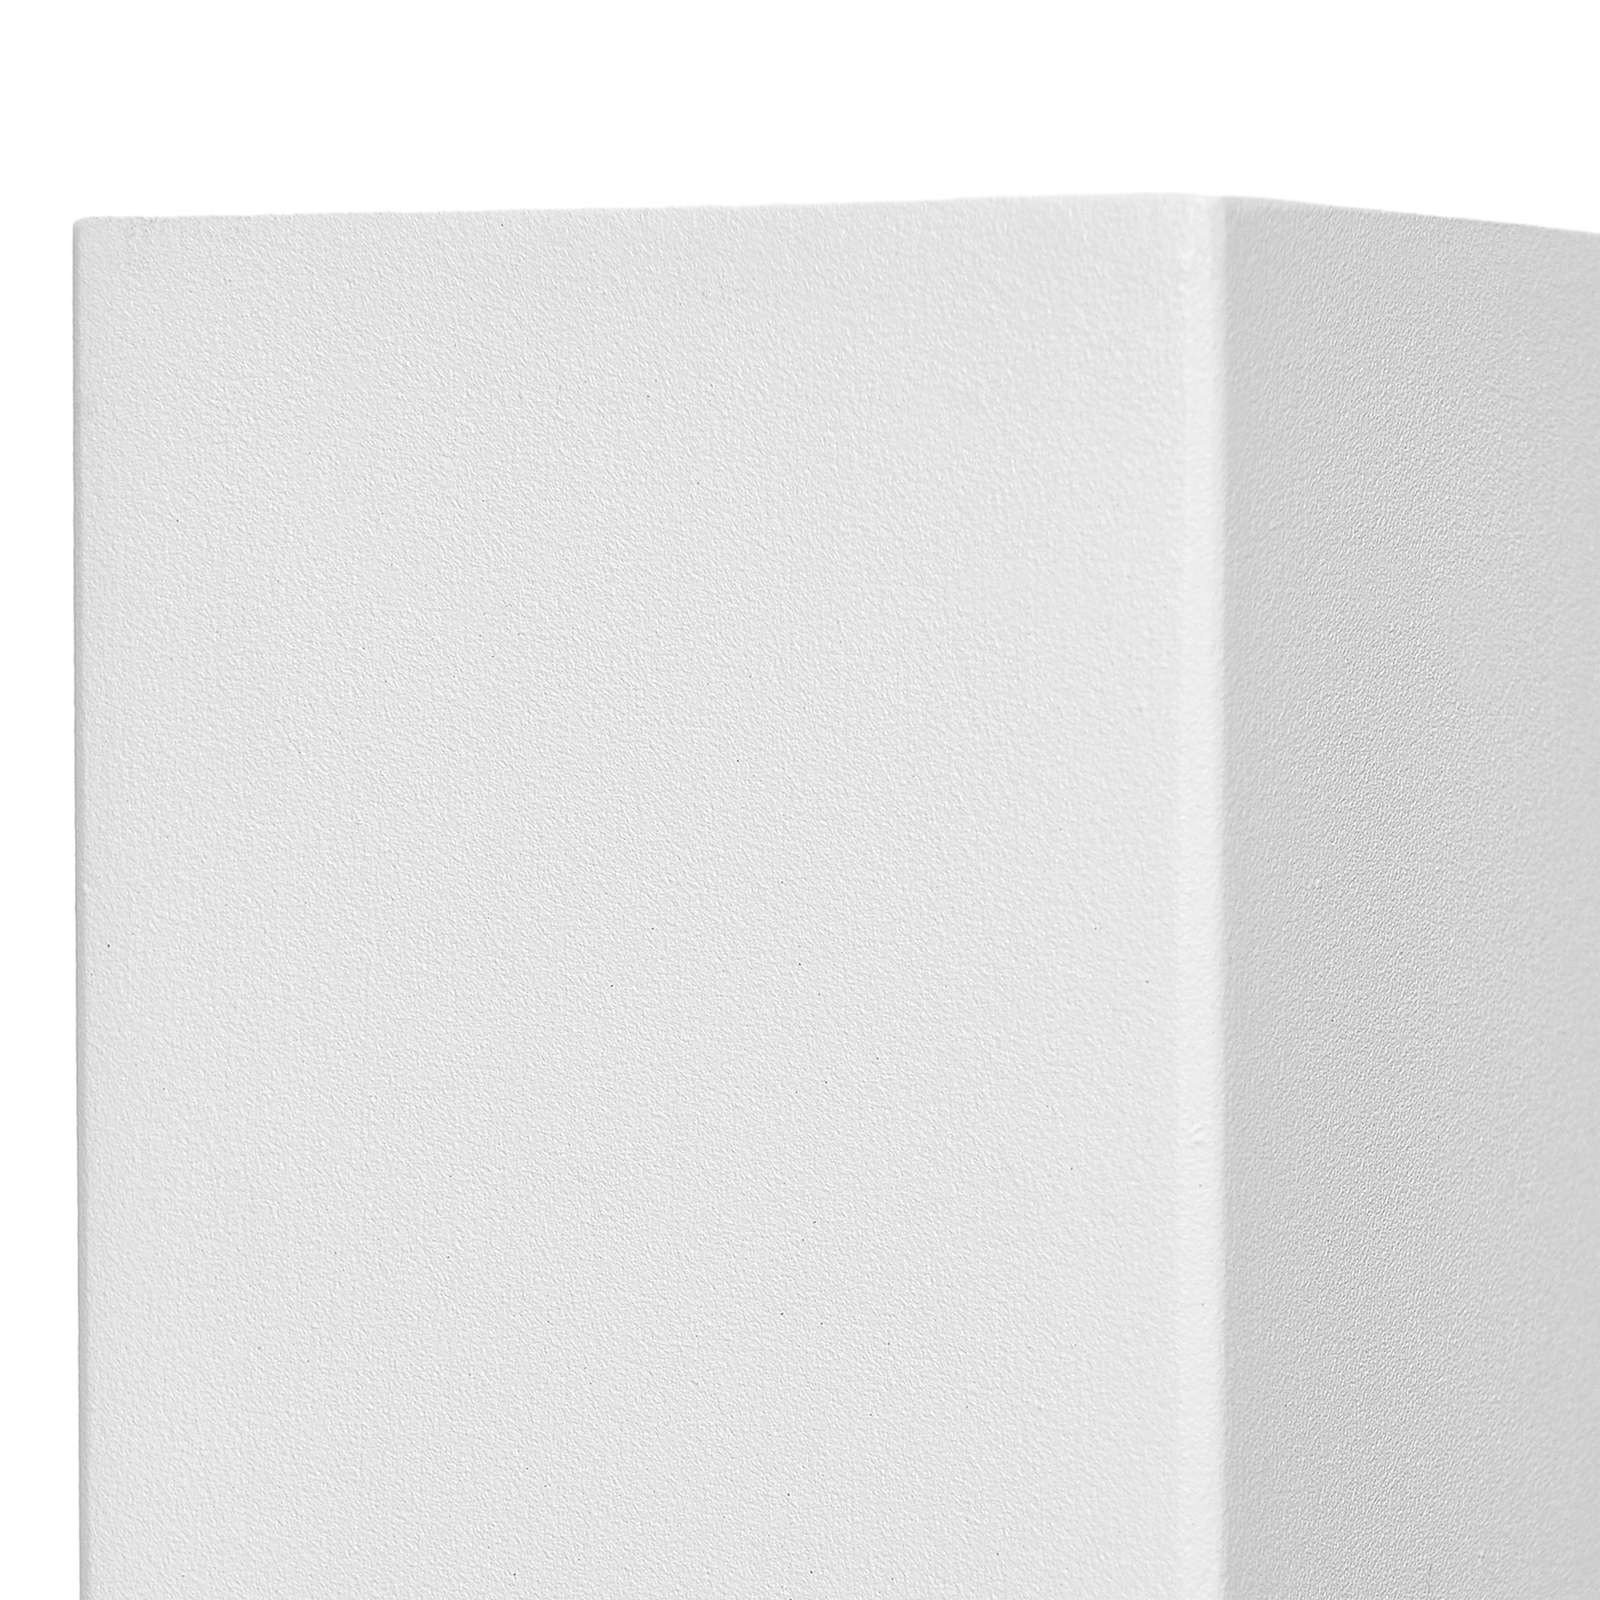 Prios Außenwandleuchte Tetje, weiß, eckig, 16 cm, 4er-Set